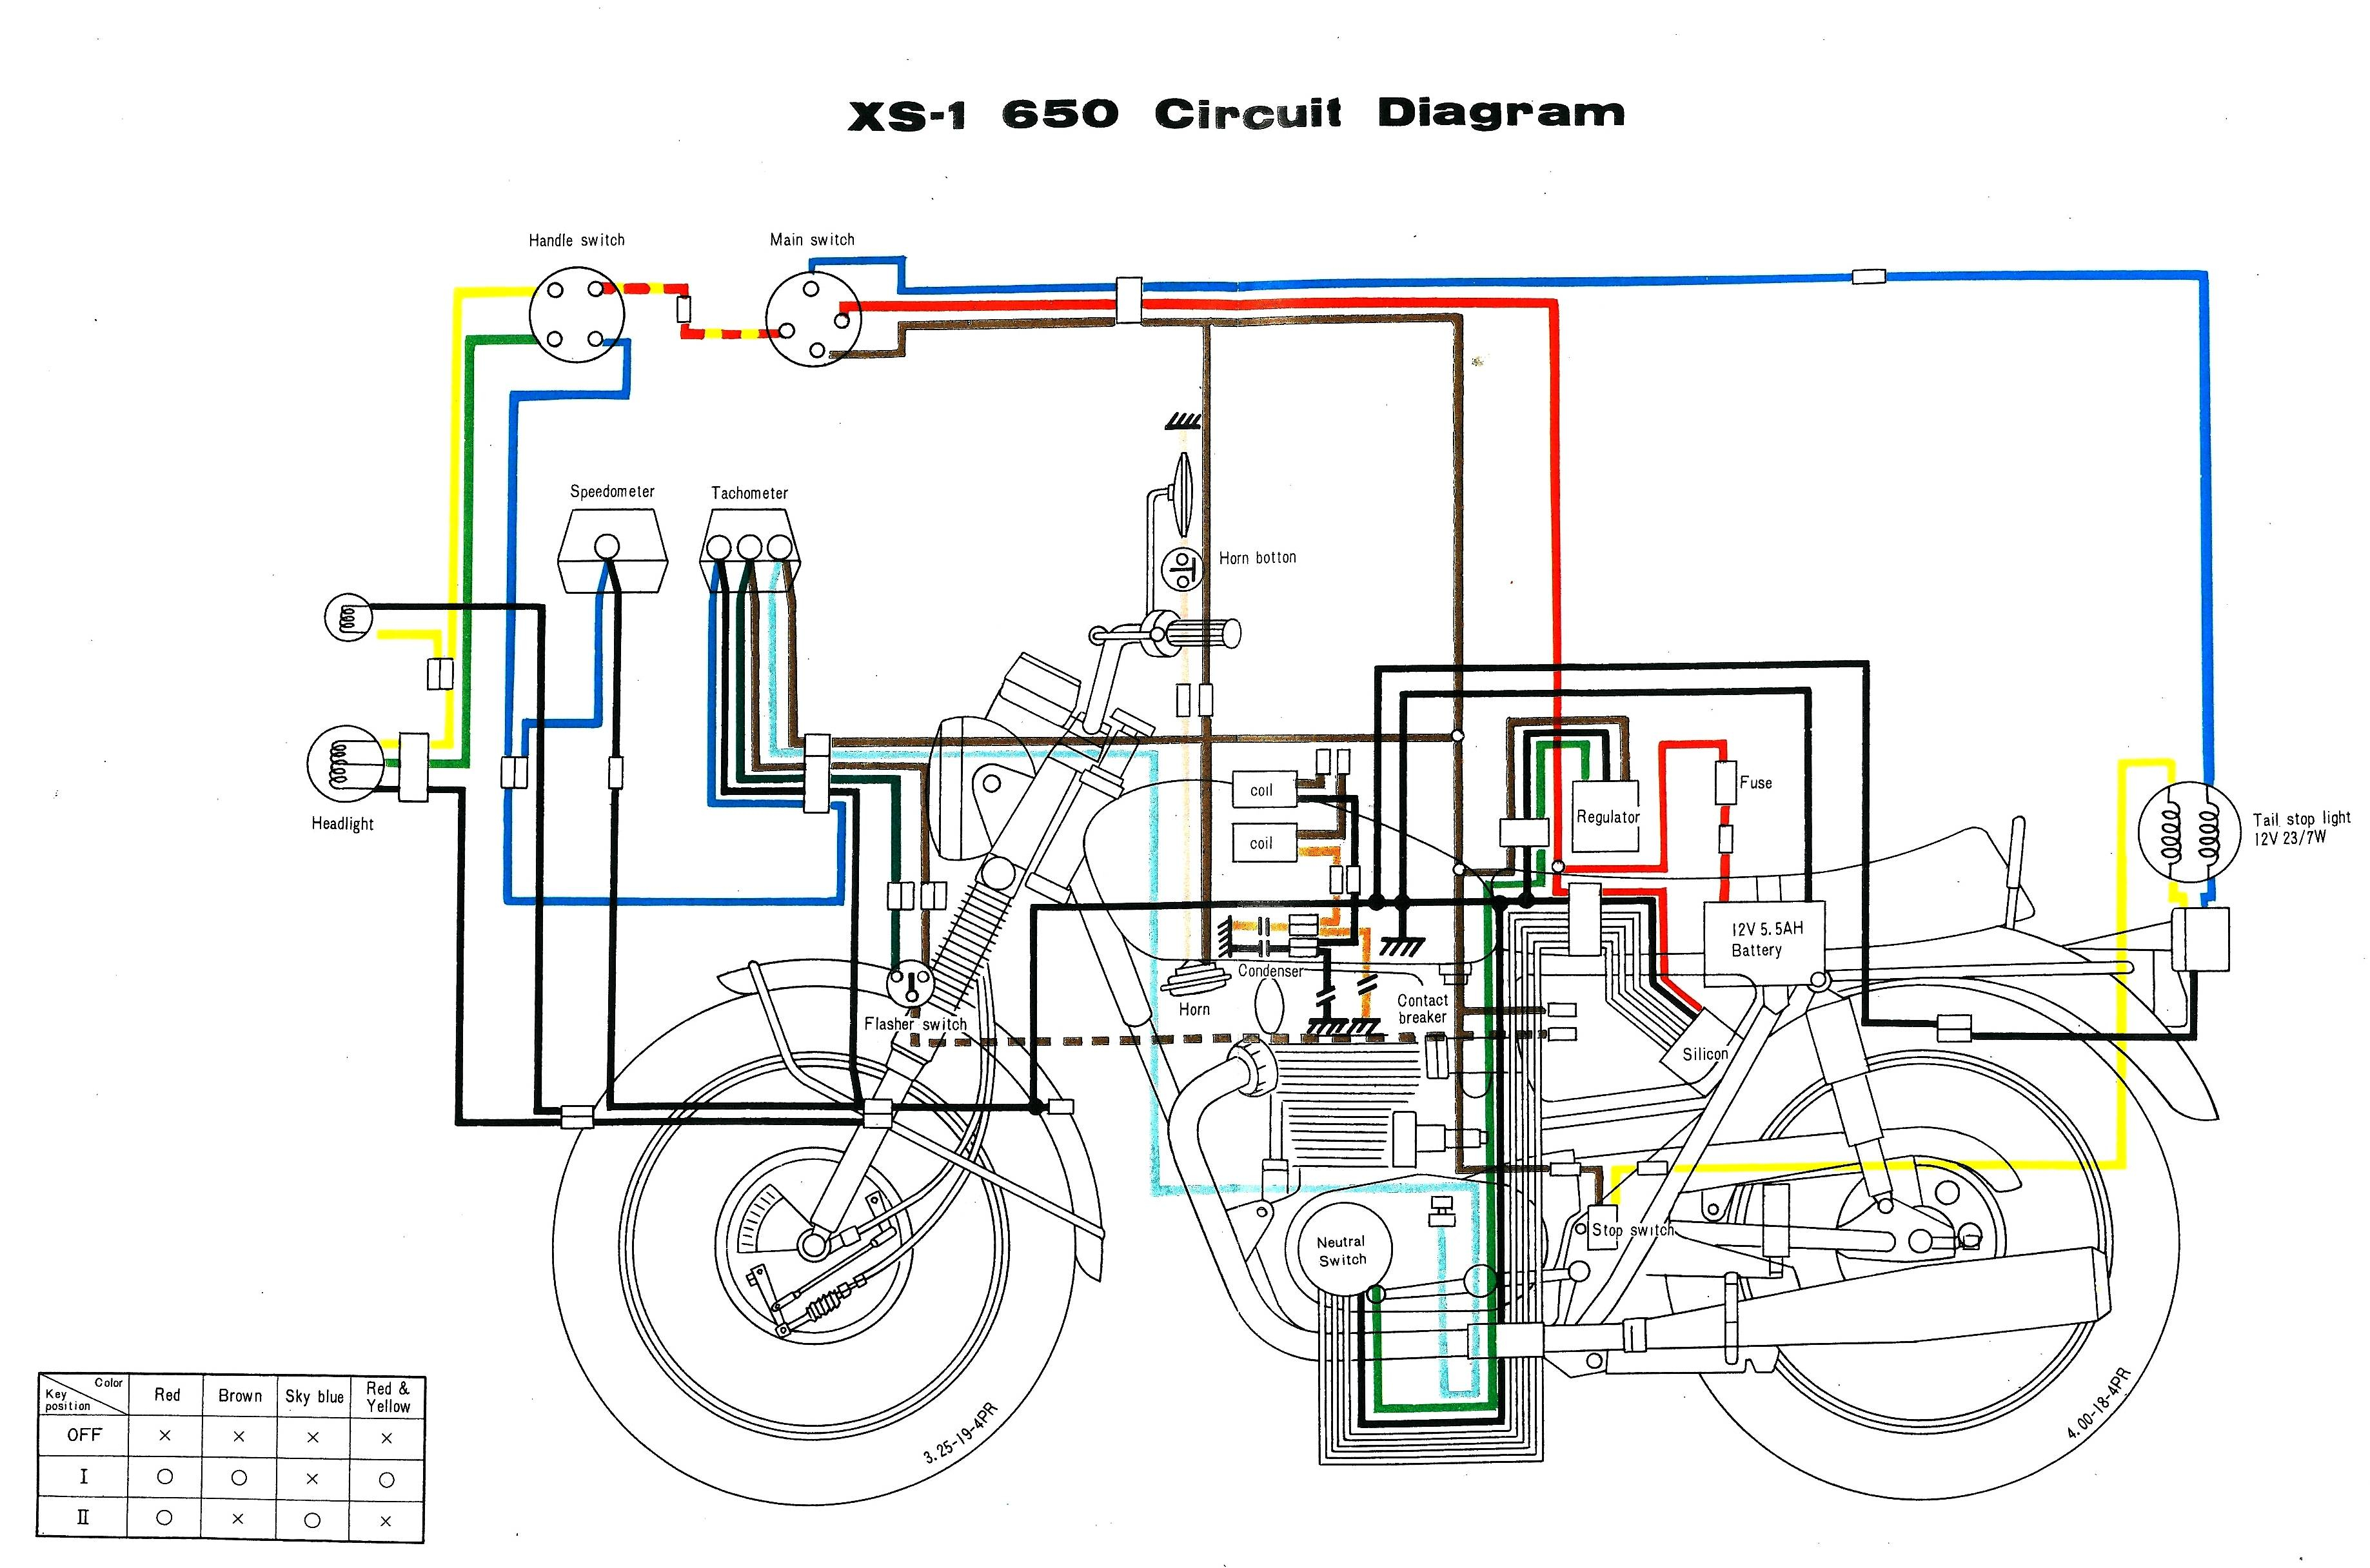 Motorcycle Wiring Schematics | Wiring Diagram - Simple Motorcycle Wiring Diagram